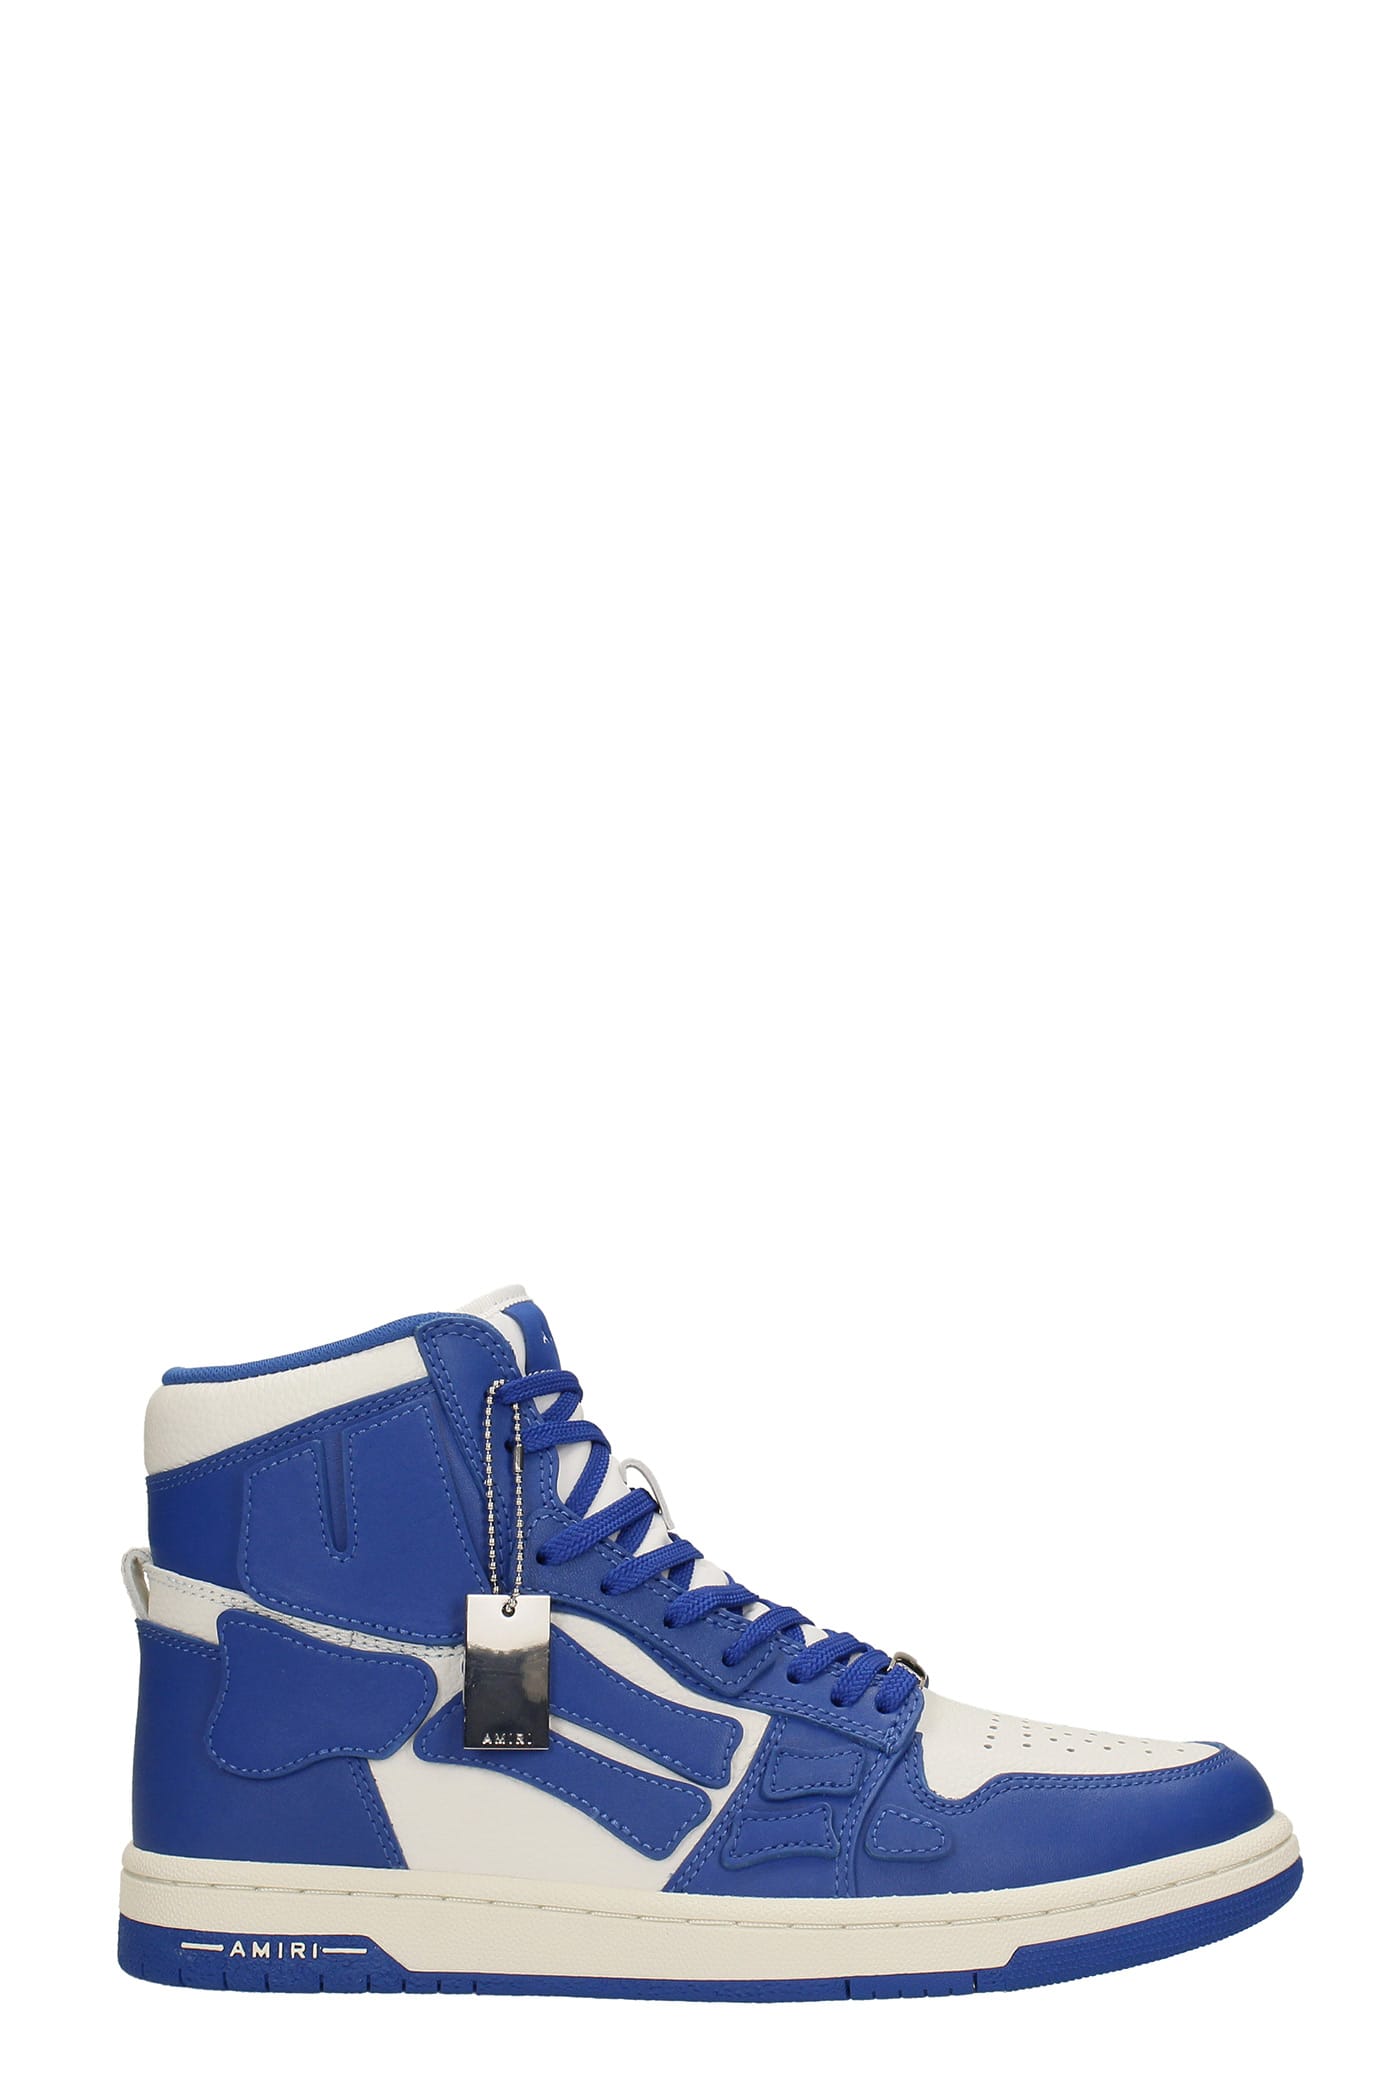 AMIRI Skel Top Hi Sneakers In Blue Leather